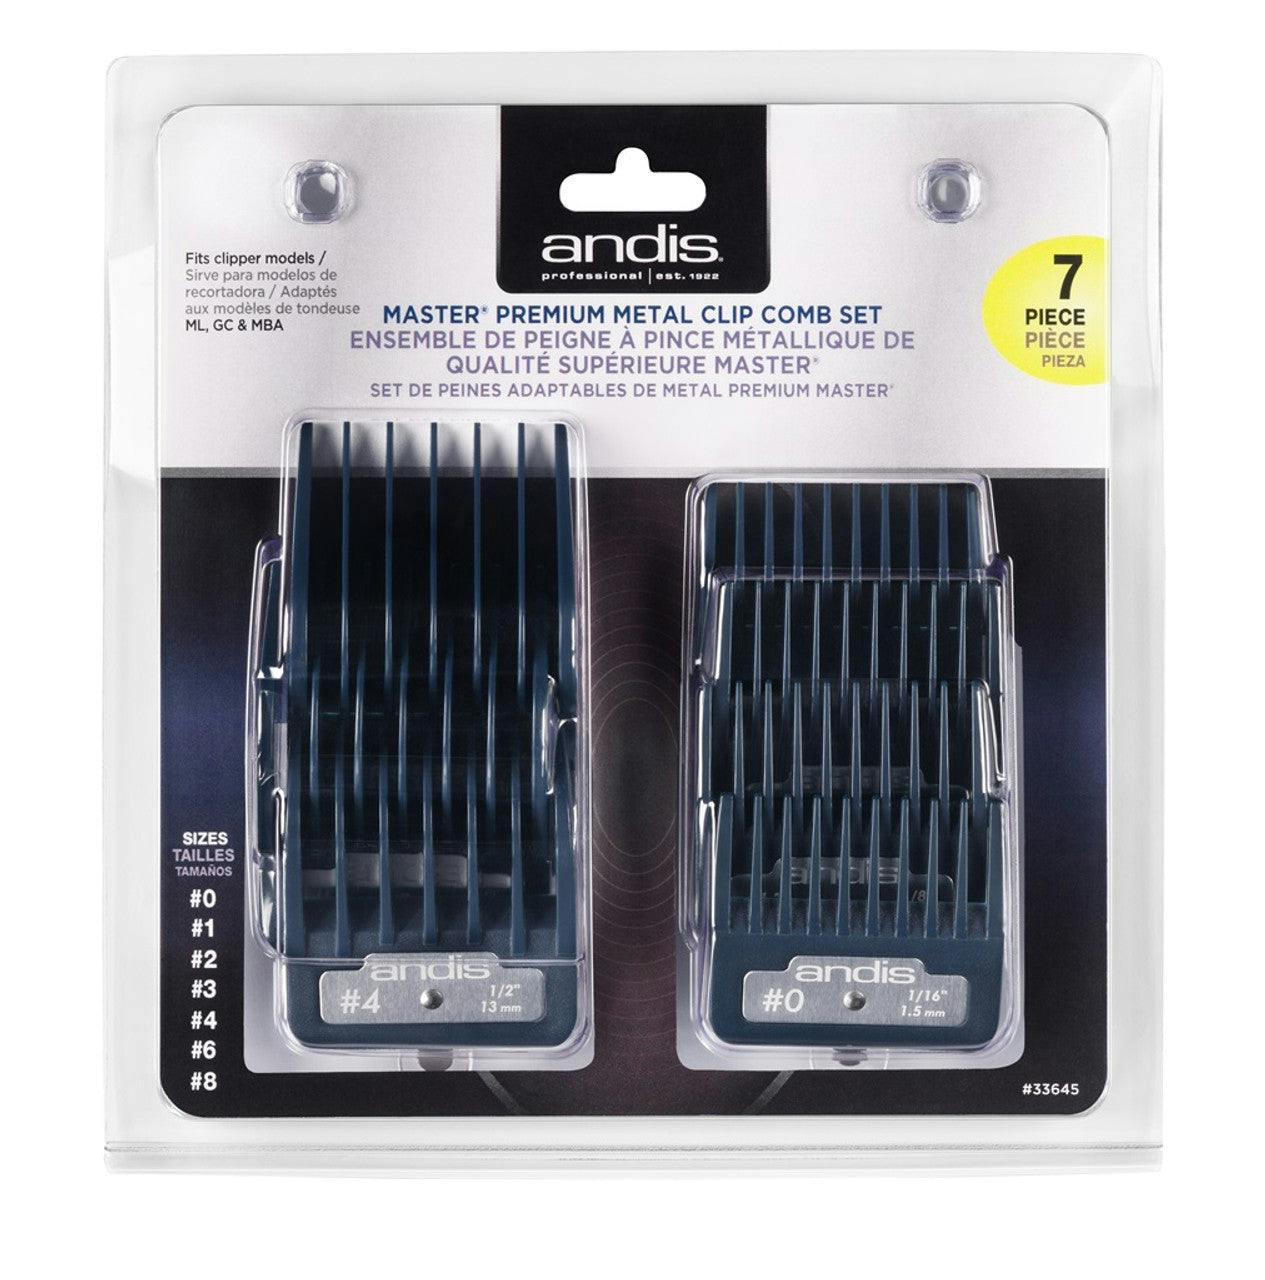 Andis Premium Metal Clip Comb Set 7 pcs - Sizes 0, 1, 2, 3, 4, 6, 8